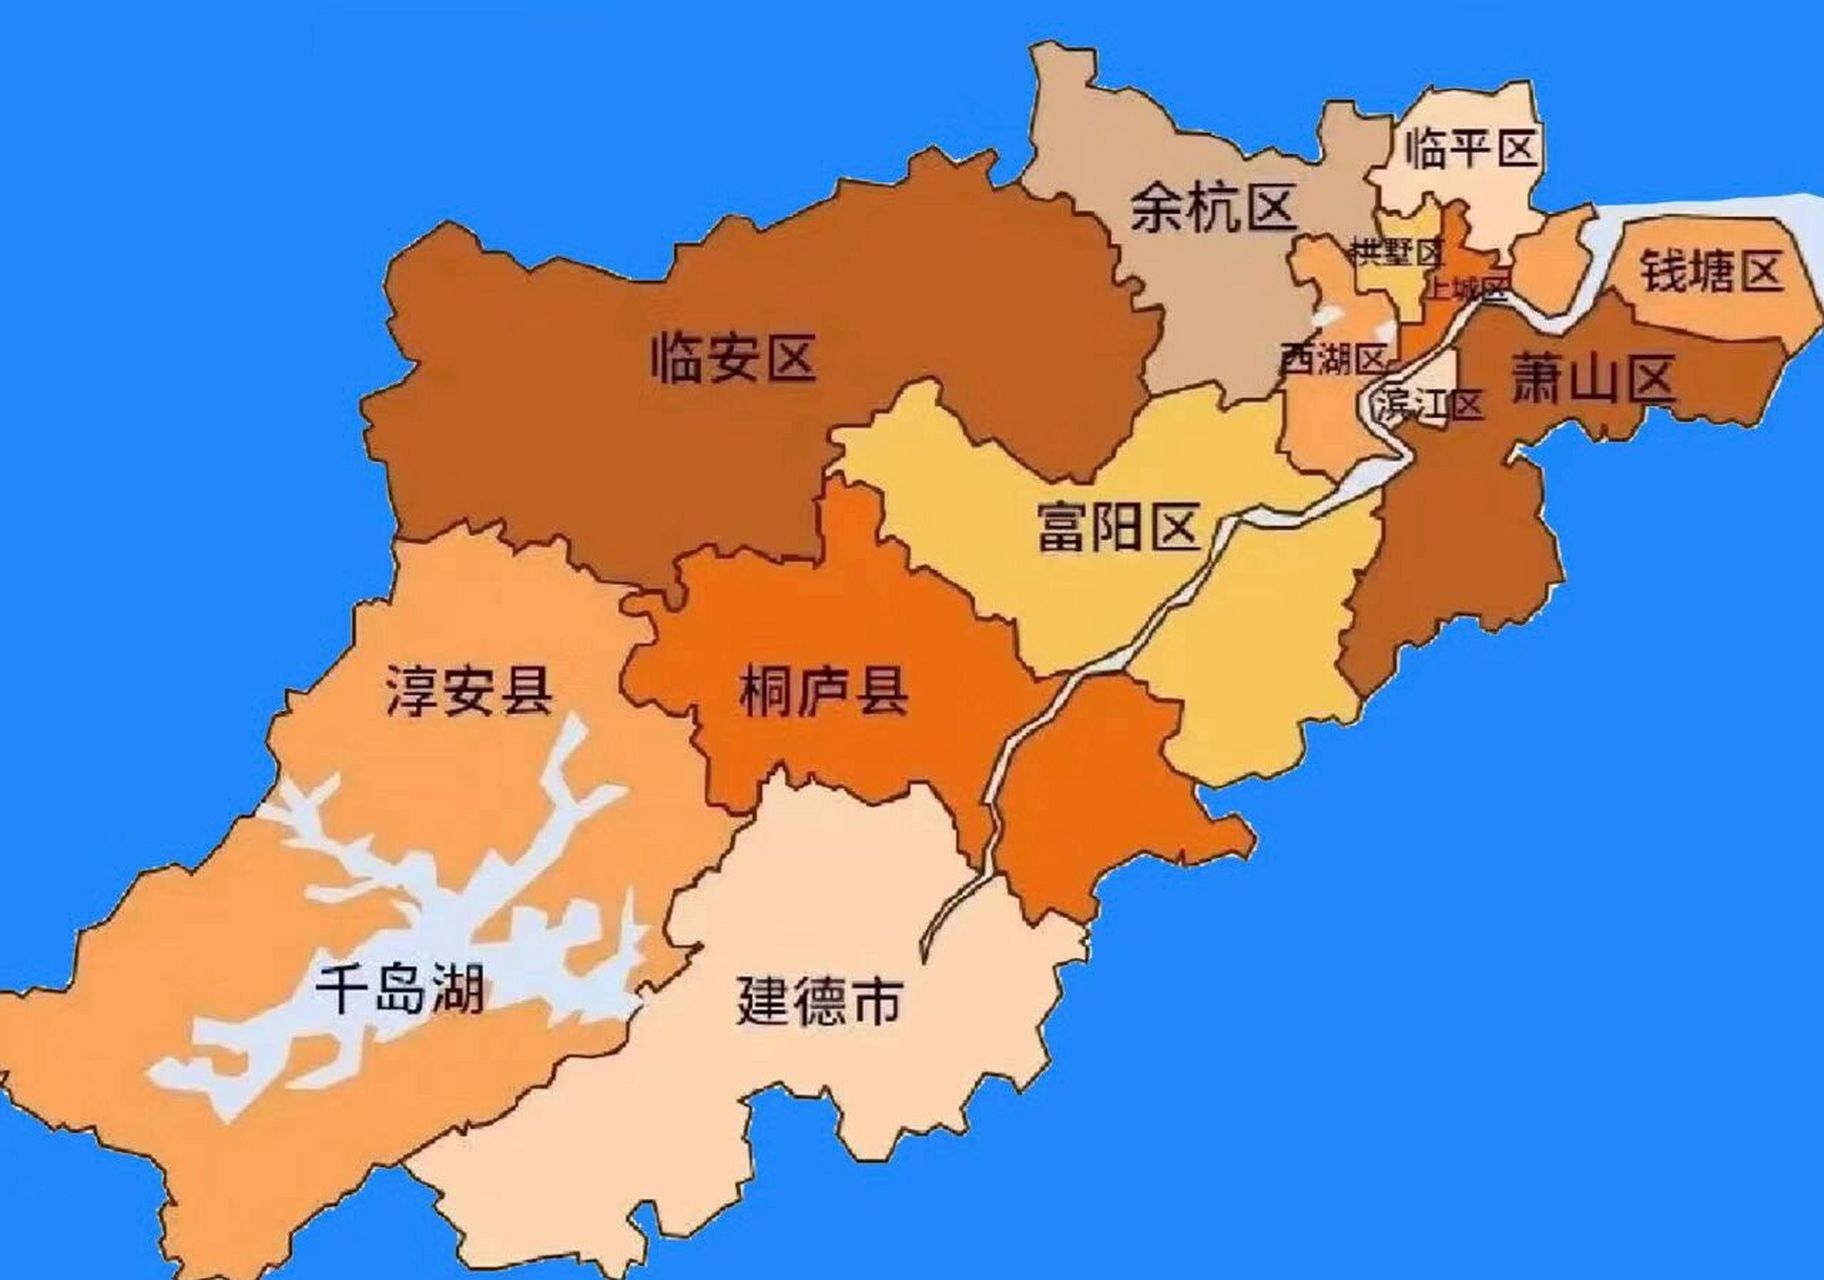 杭州区域划分图九大图片